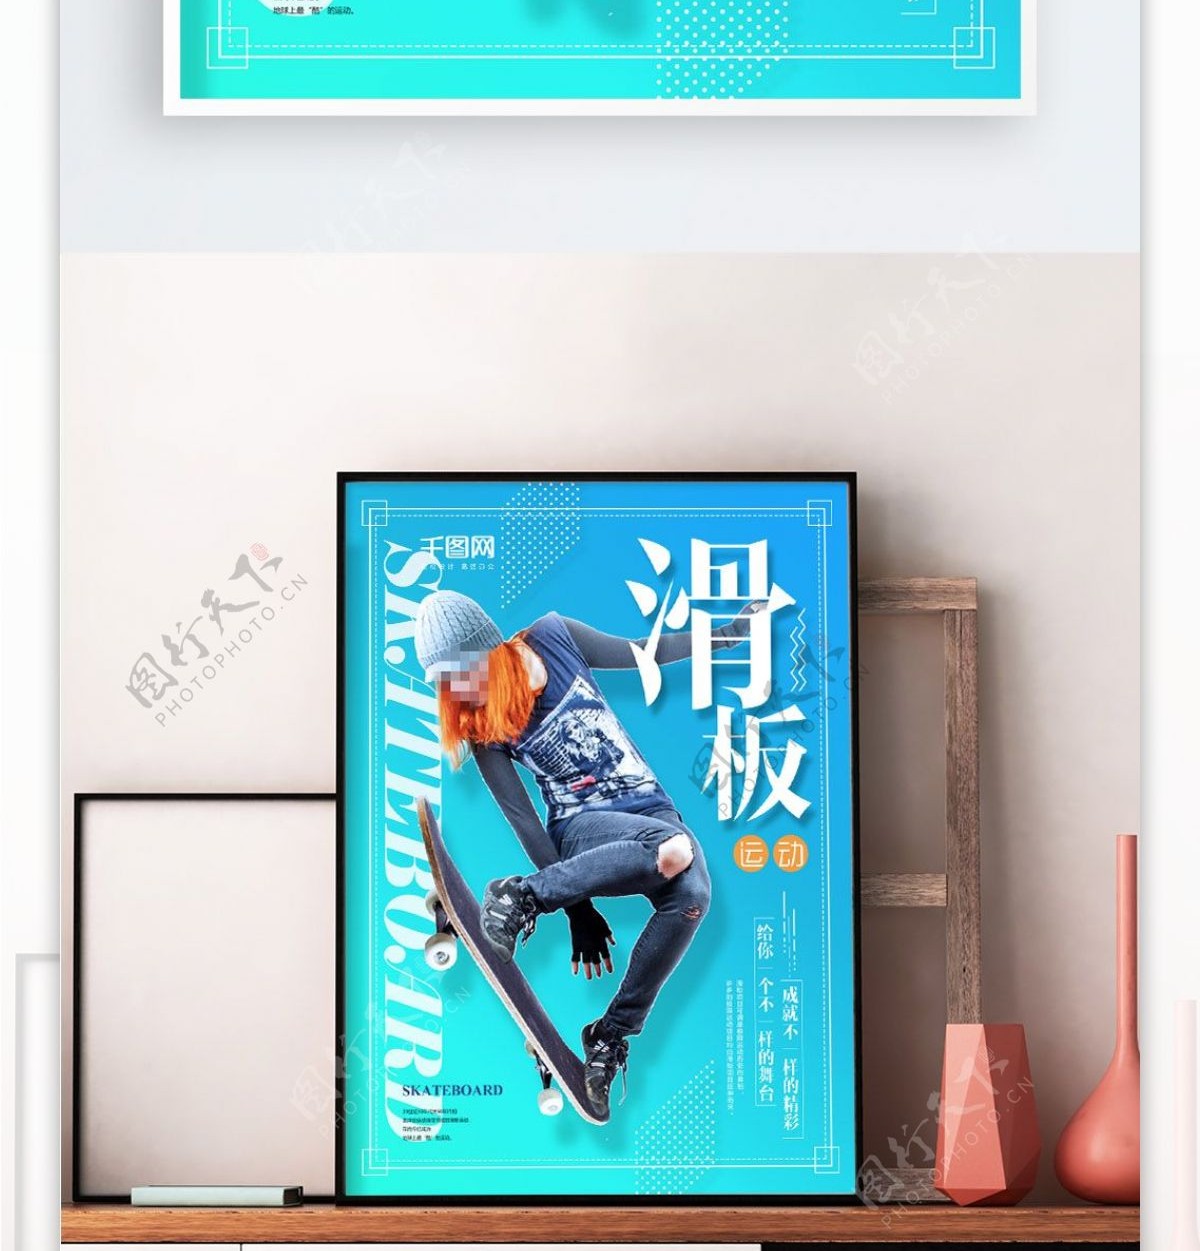 滑板运动宣传海报